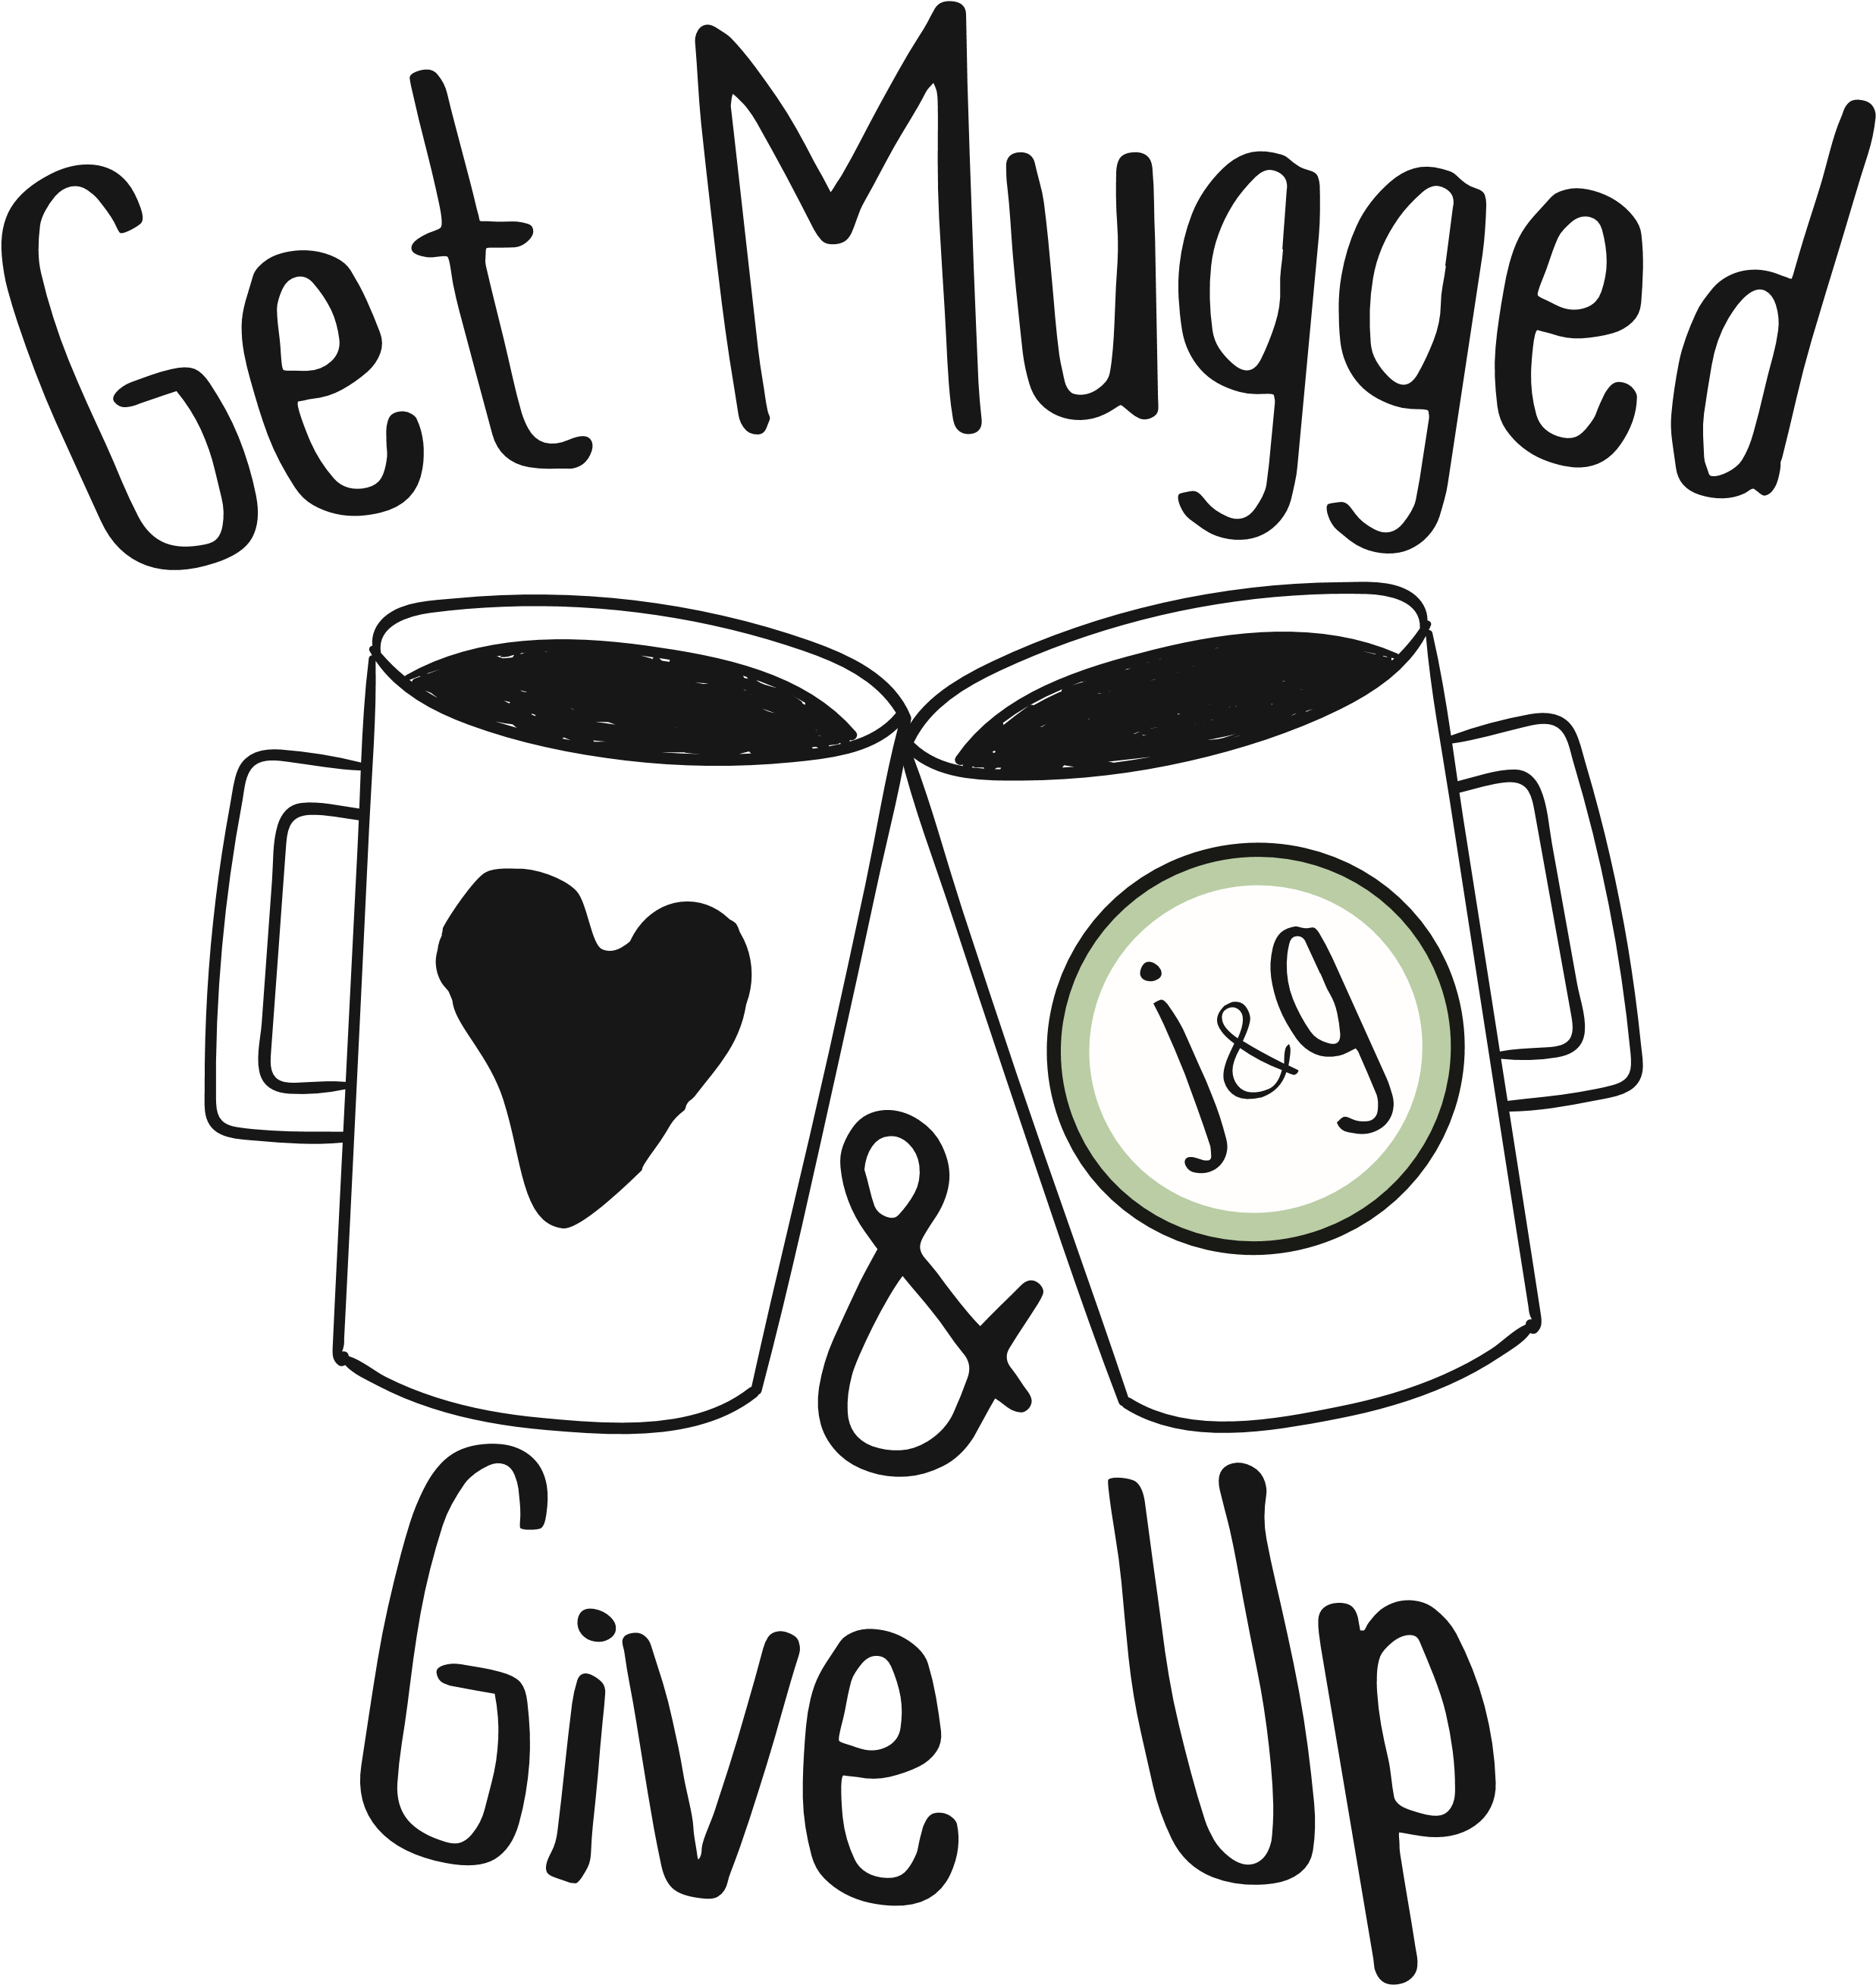 Get Mugged And Give Up Logo - Logo (2474x2618)